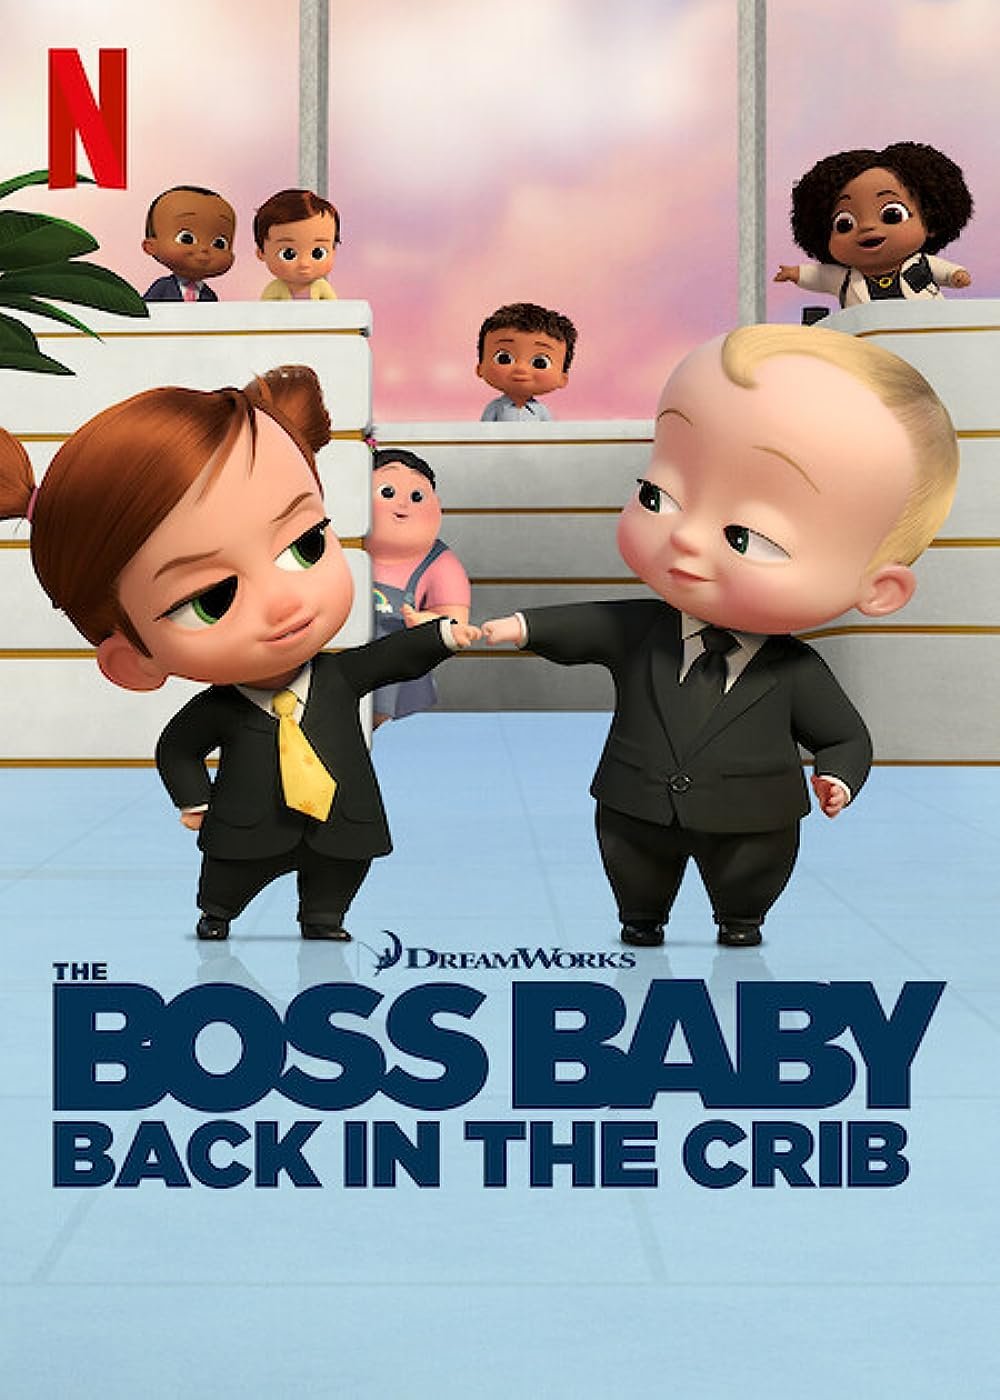 BossBabyS3 poster